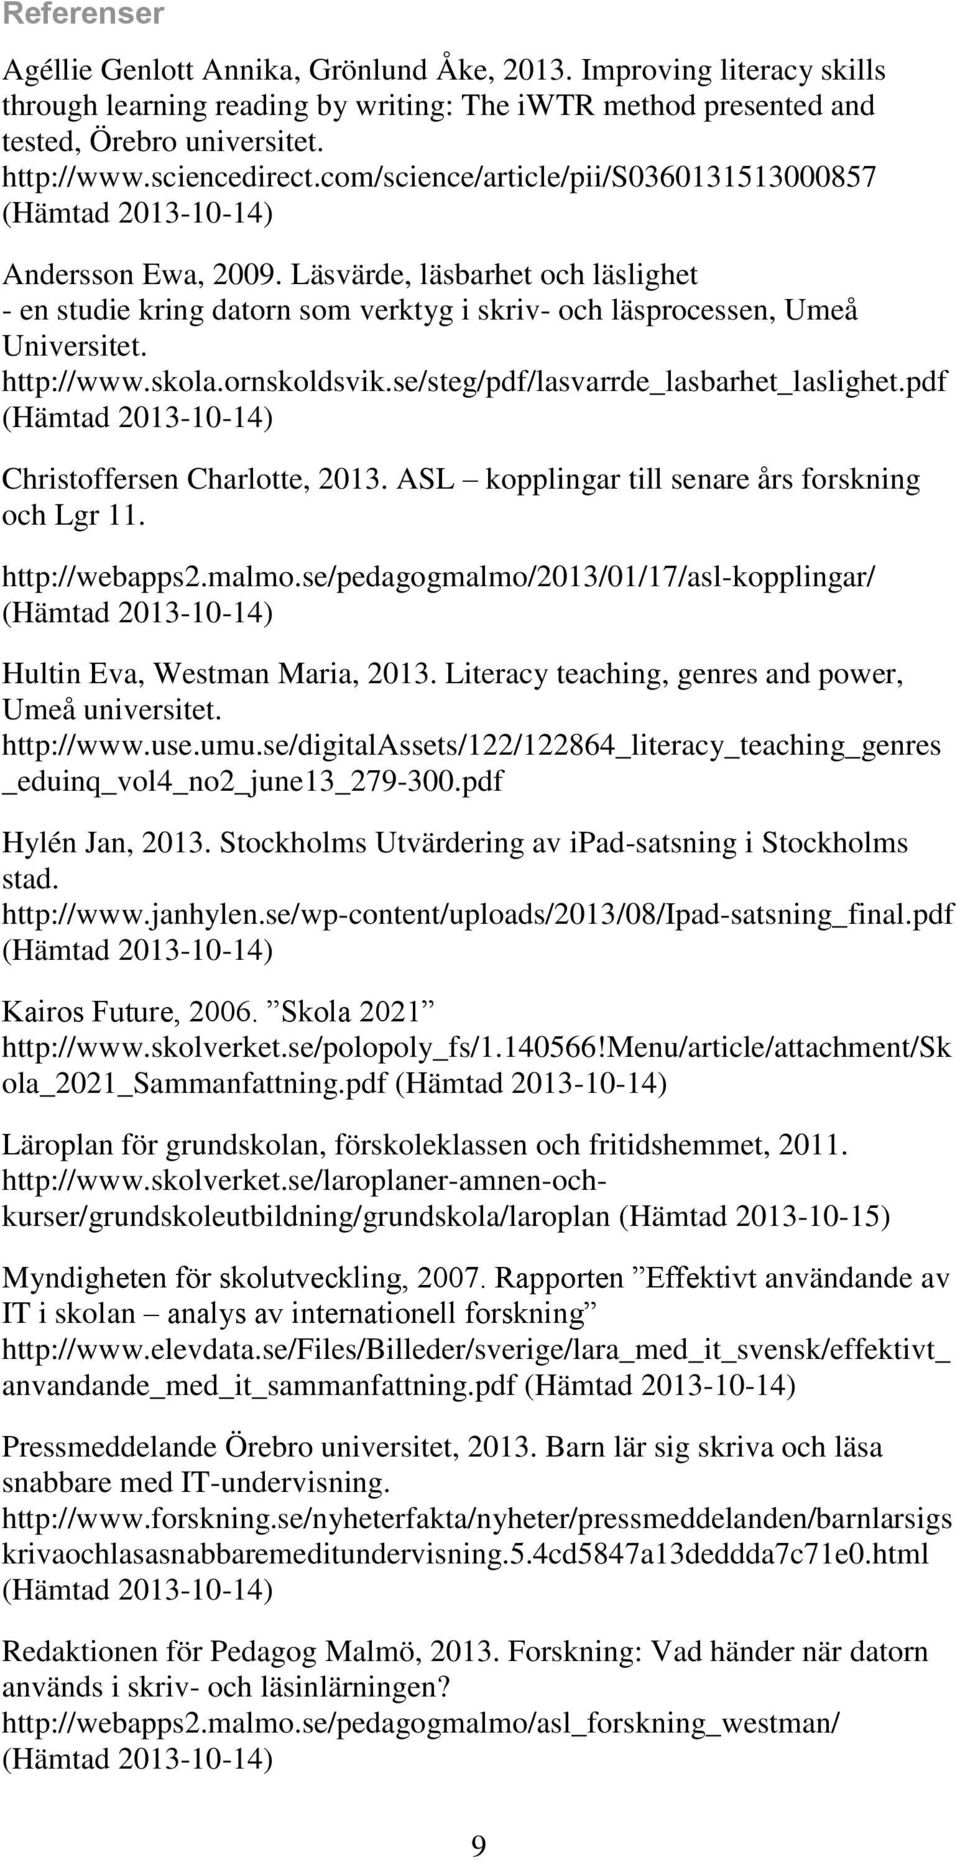 http://www.skola.ornskoldsvik.se/steg/pdf/lasvarrde_lasbarhet_laslighet.pdf Christoffersen Charlotte, 2013. ASL kopplingar till senare års forskning och Lgr 11. http://webapps2.malmo.